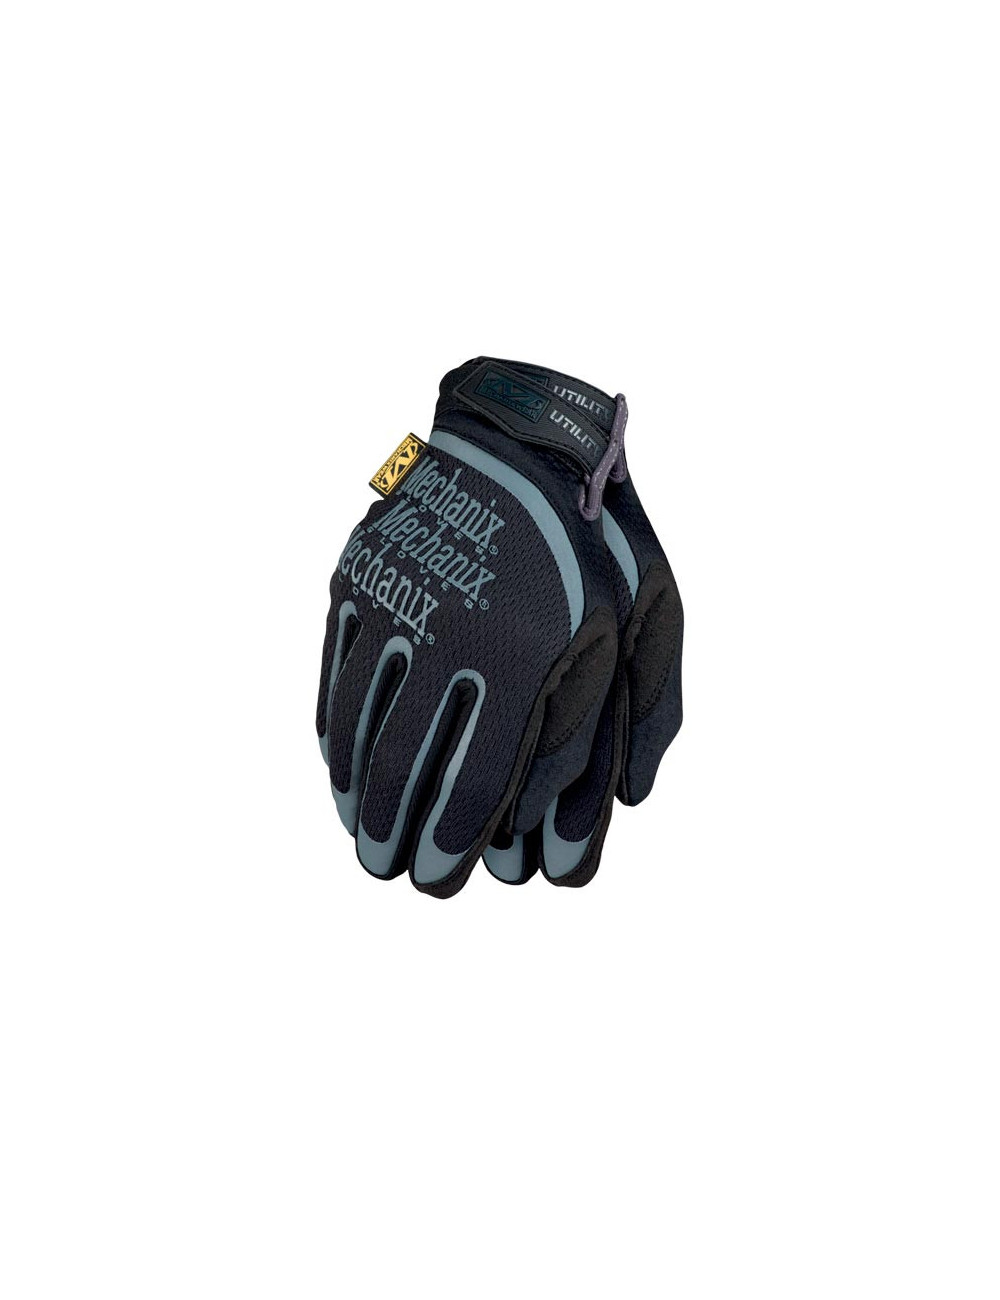 rm-utility bs Schutzhandschuhe schwarz und grau Mechanix